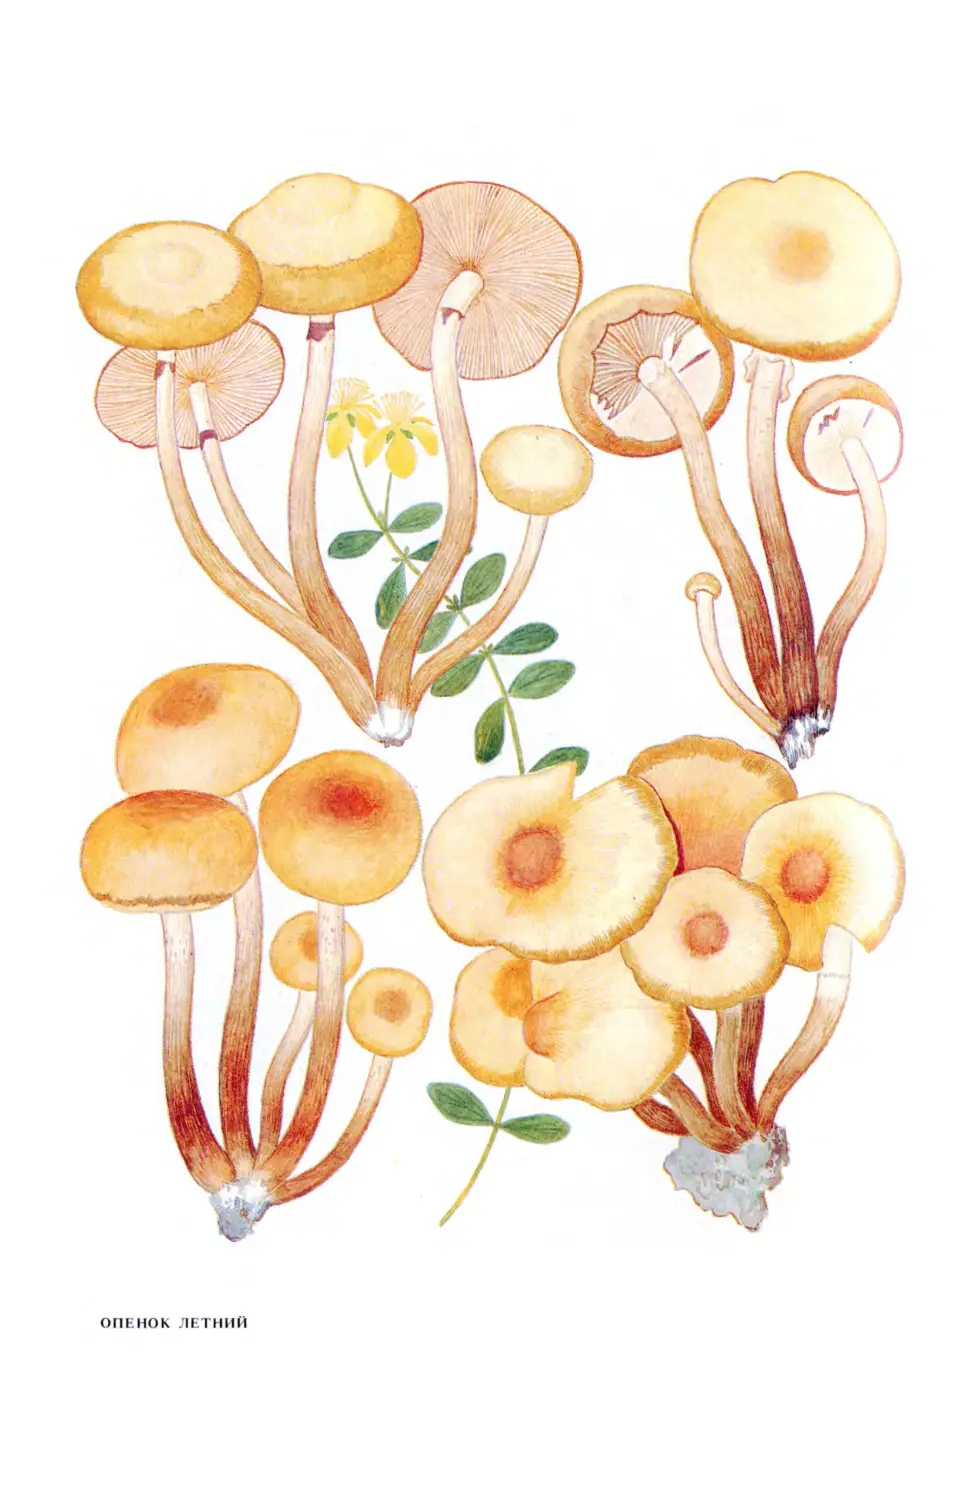 Рисунок гриба опенок осенний